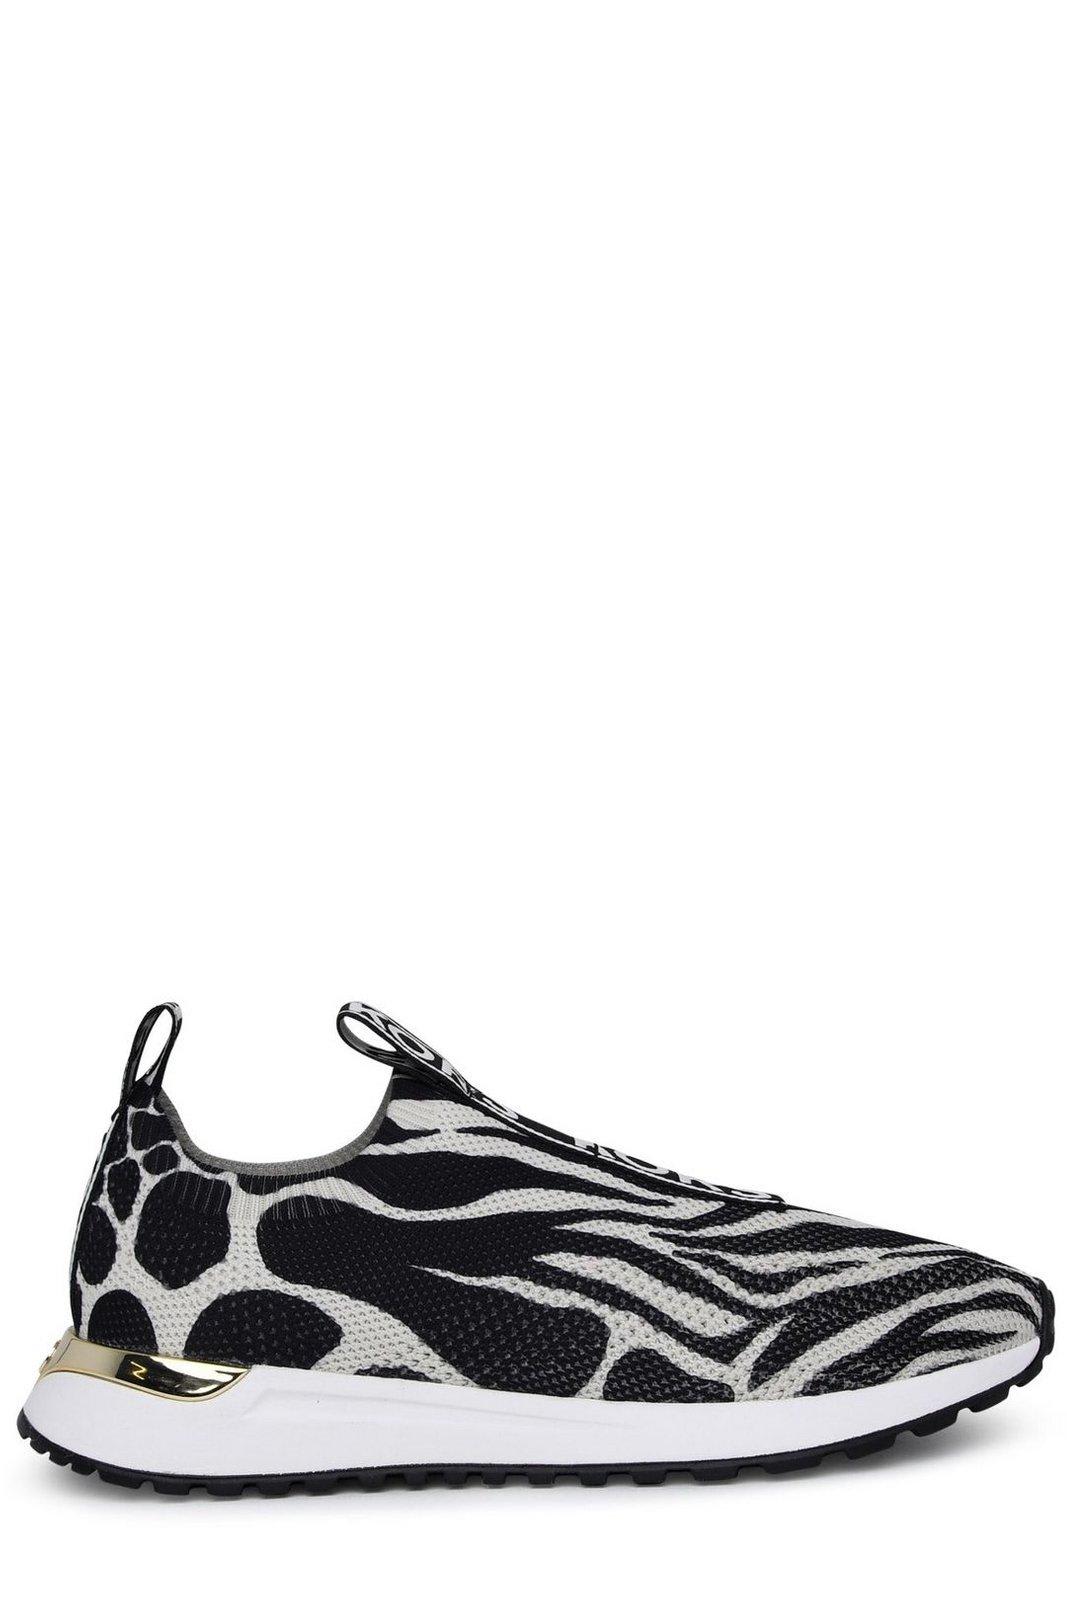 MICHAEL Michael Kors Leopard Printed Slip-on Sneakers